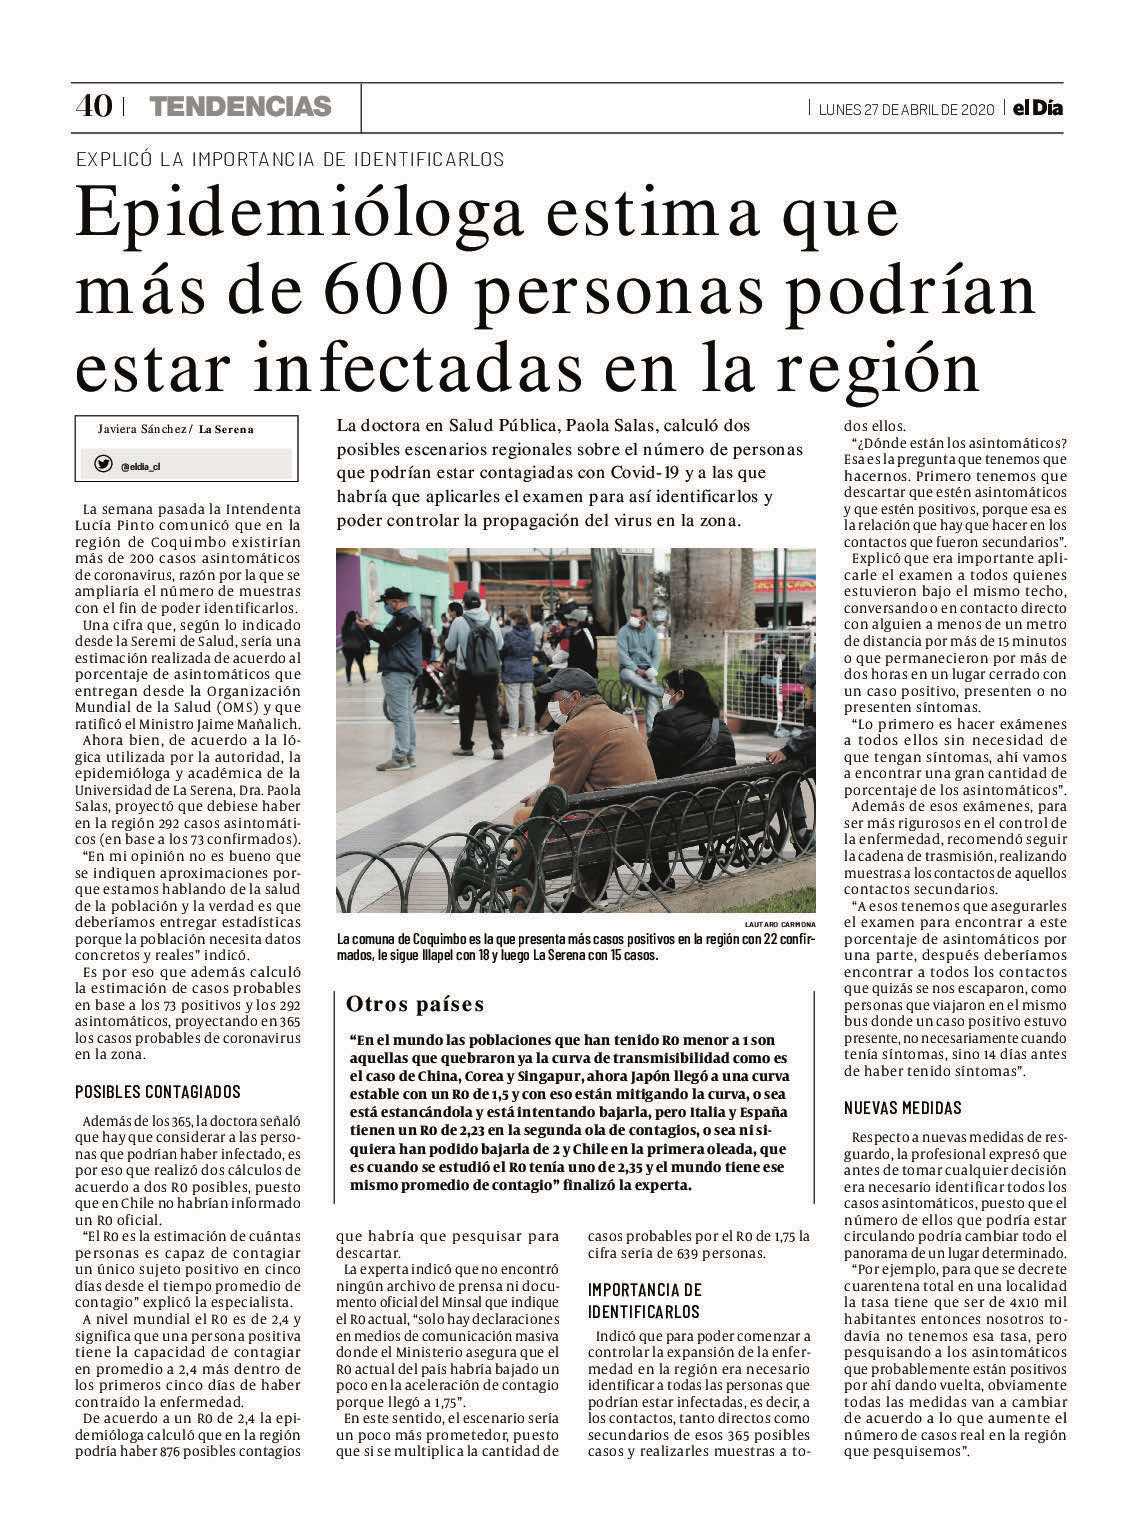 [PRENSA]Epidemióloga ULS estima que más de 600 personas podrían estar infectadas en la Región